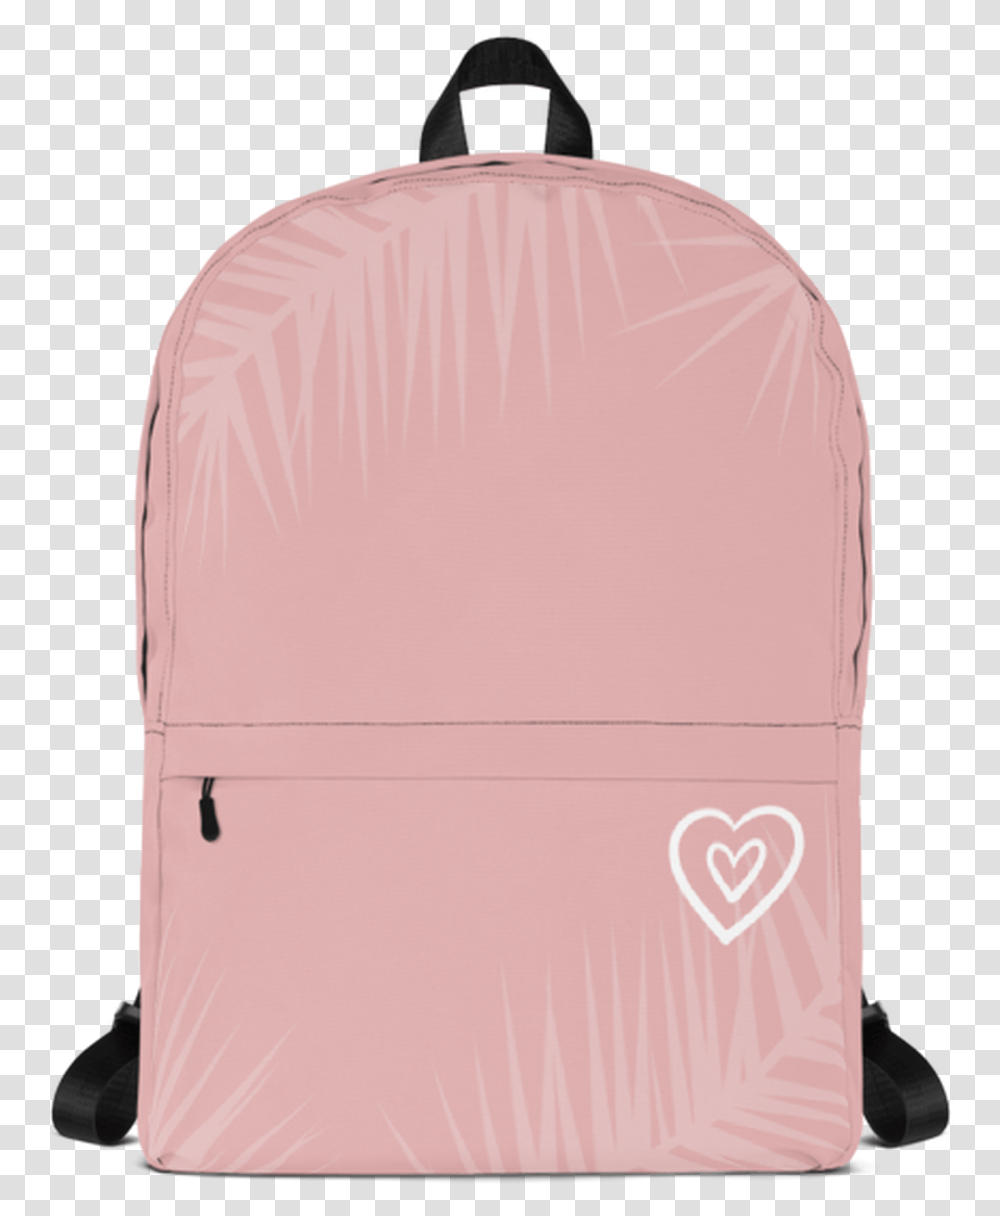 Banana Backwoods Backpack, Bag, Luggage Transparent Png